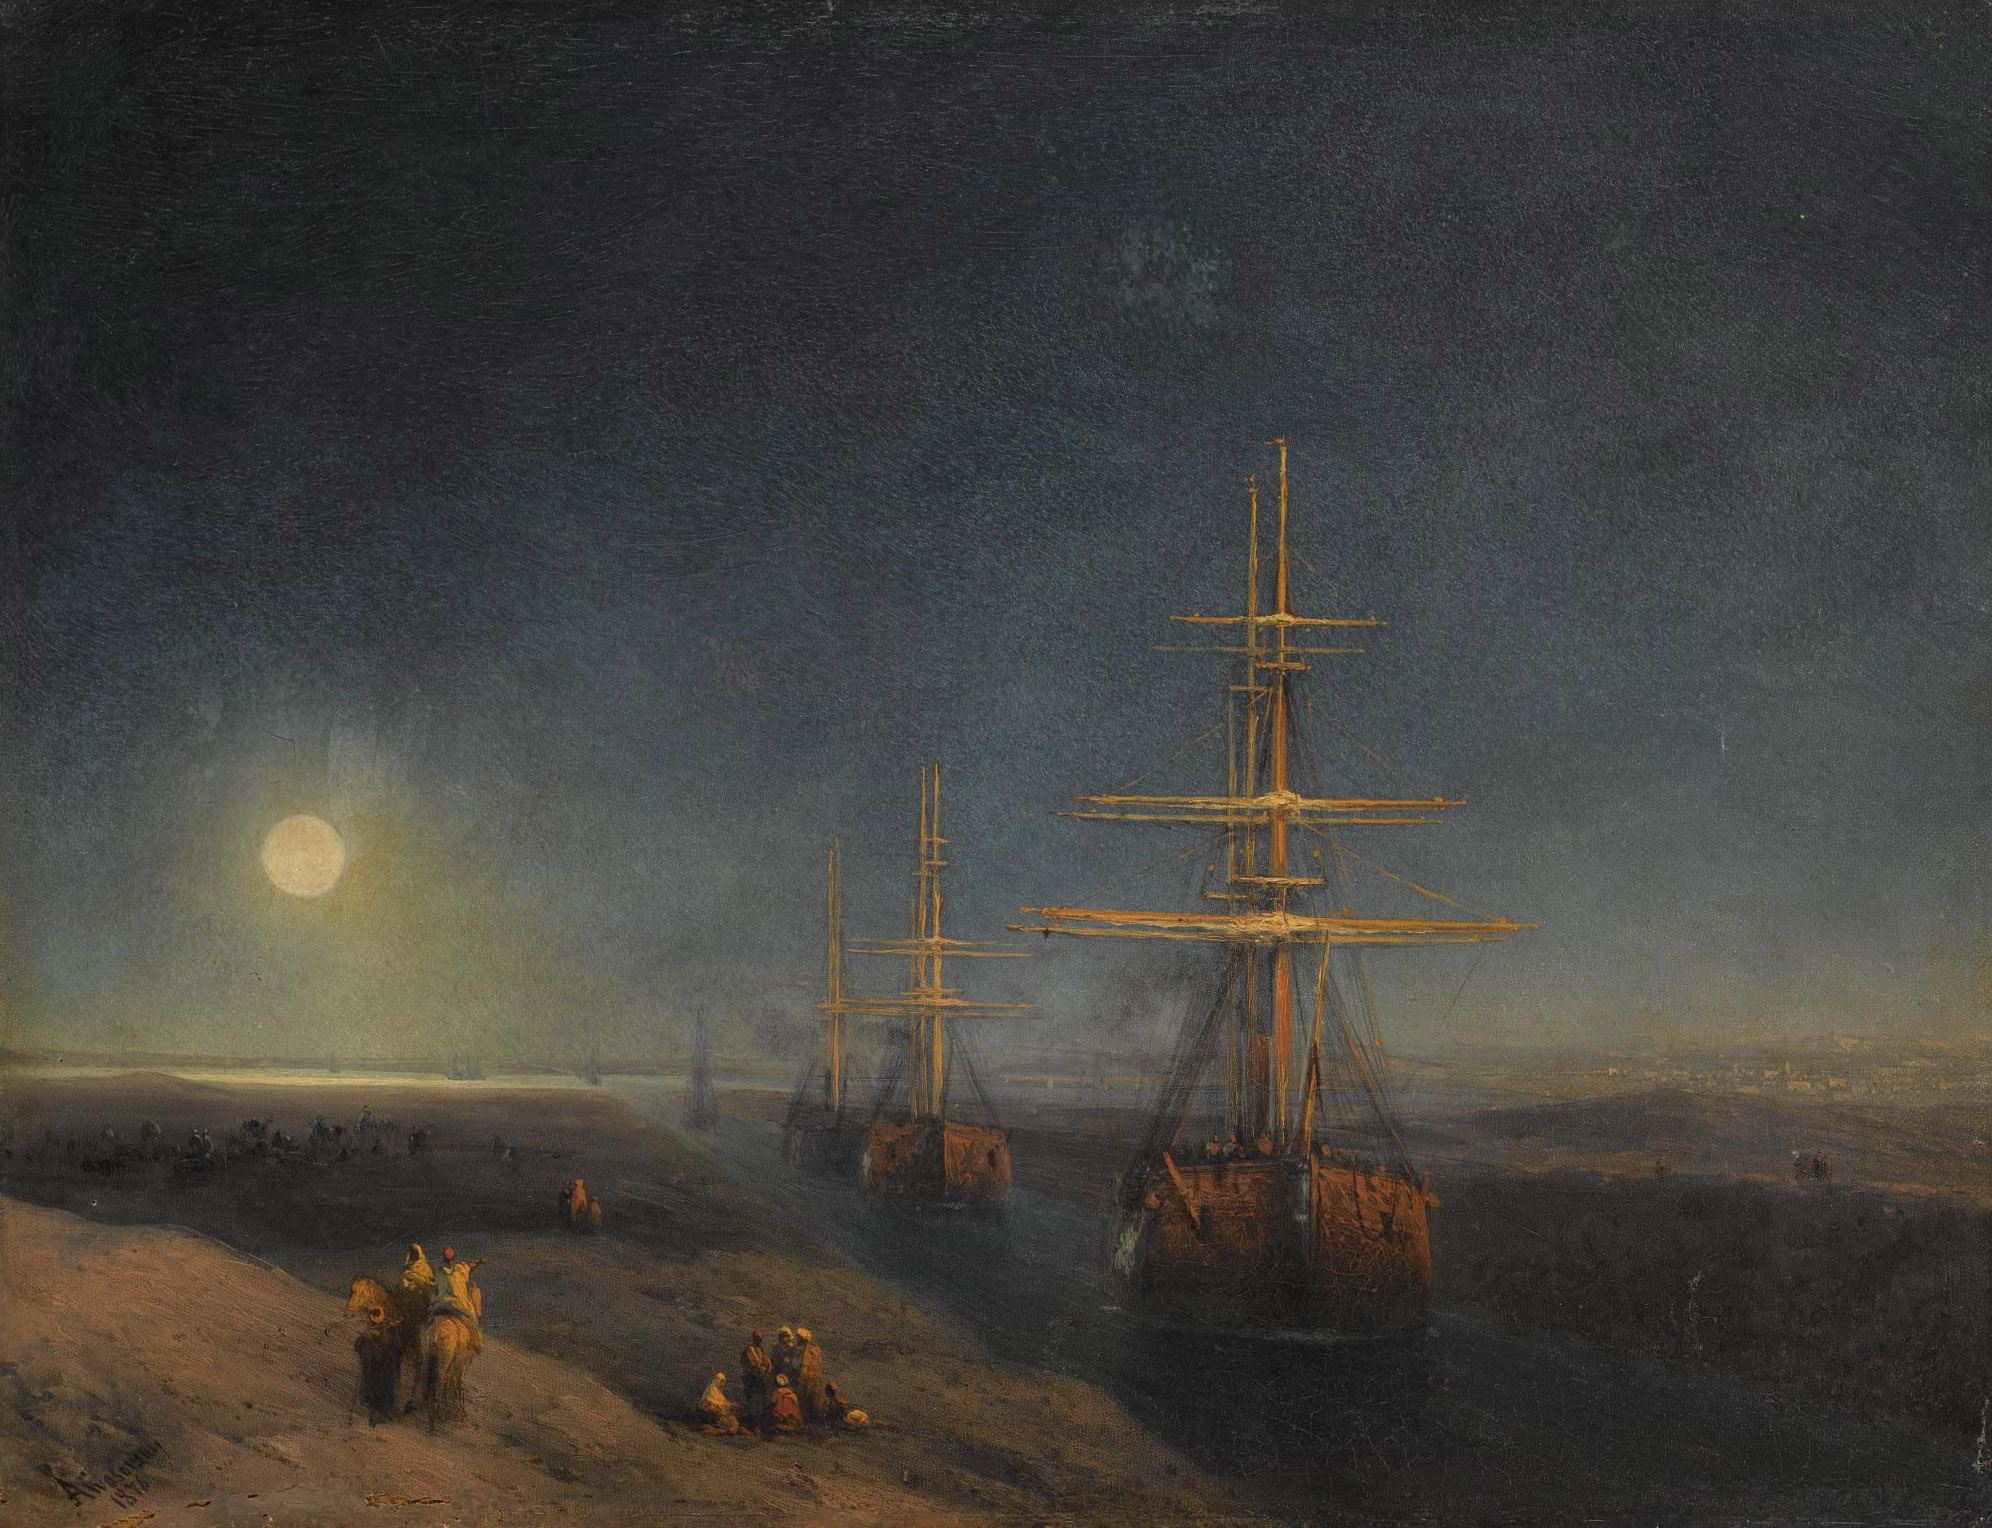 Айвазовский. Корабли, проходящие по каналу лунной ночью. 1876